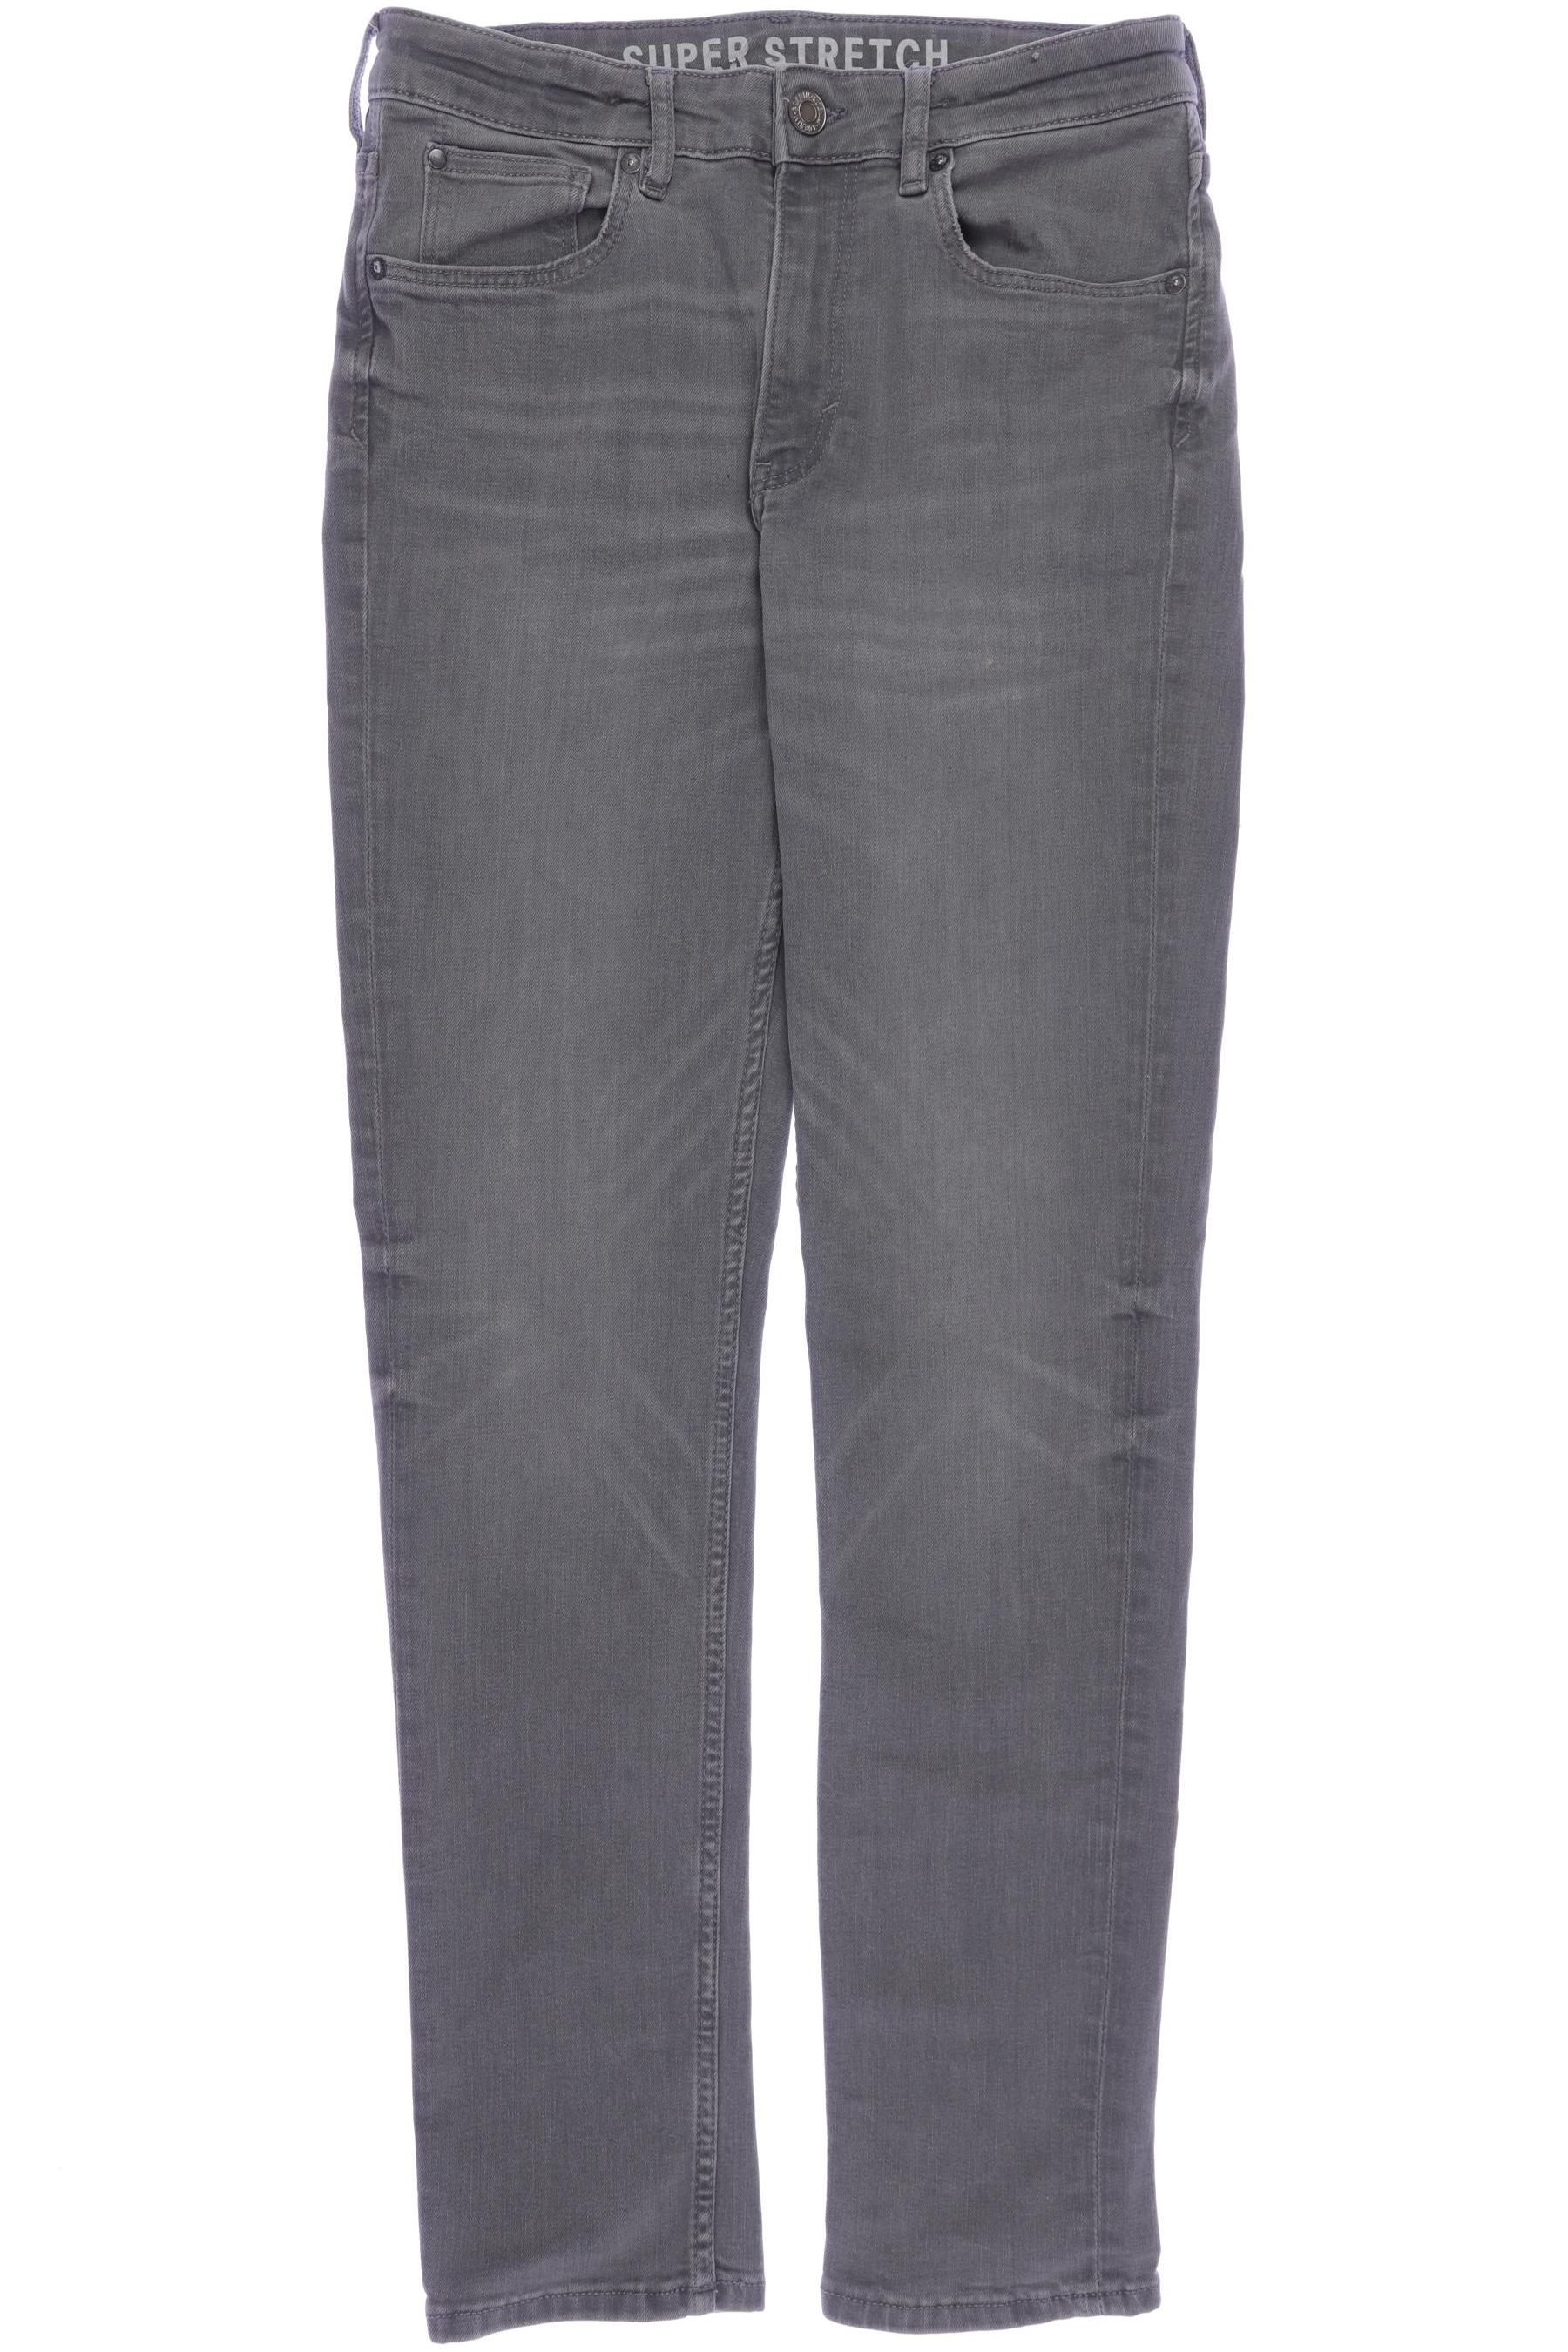 H&M Herren Jeans, grau, Gr. 170 von H&M